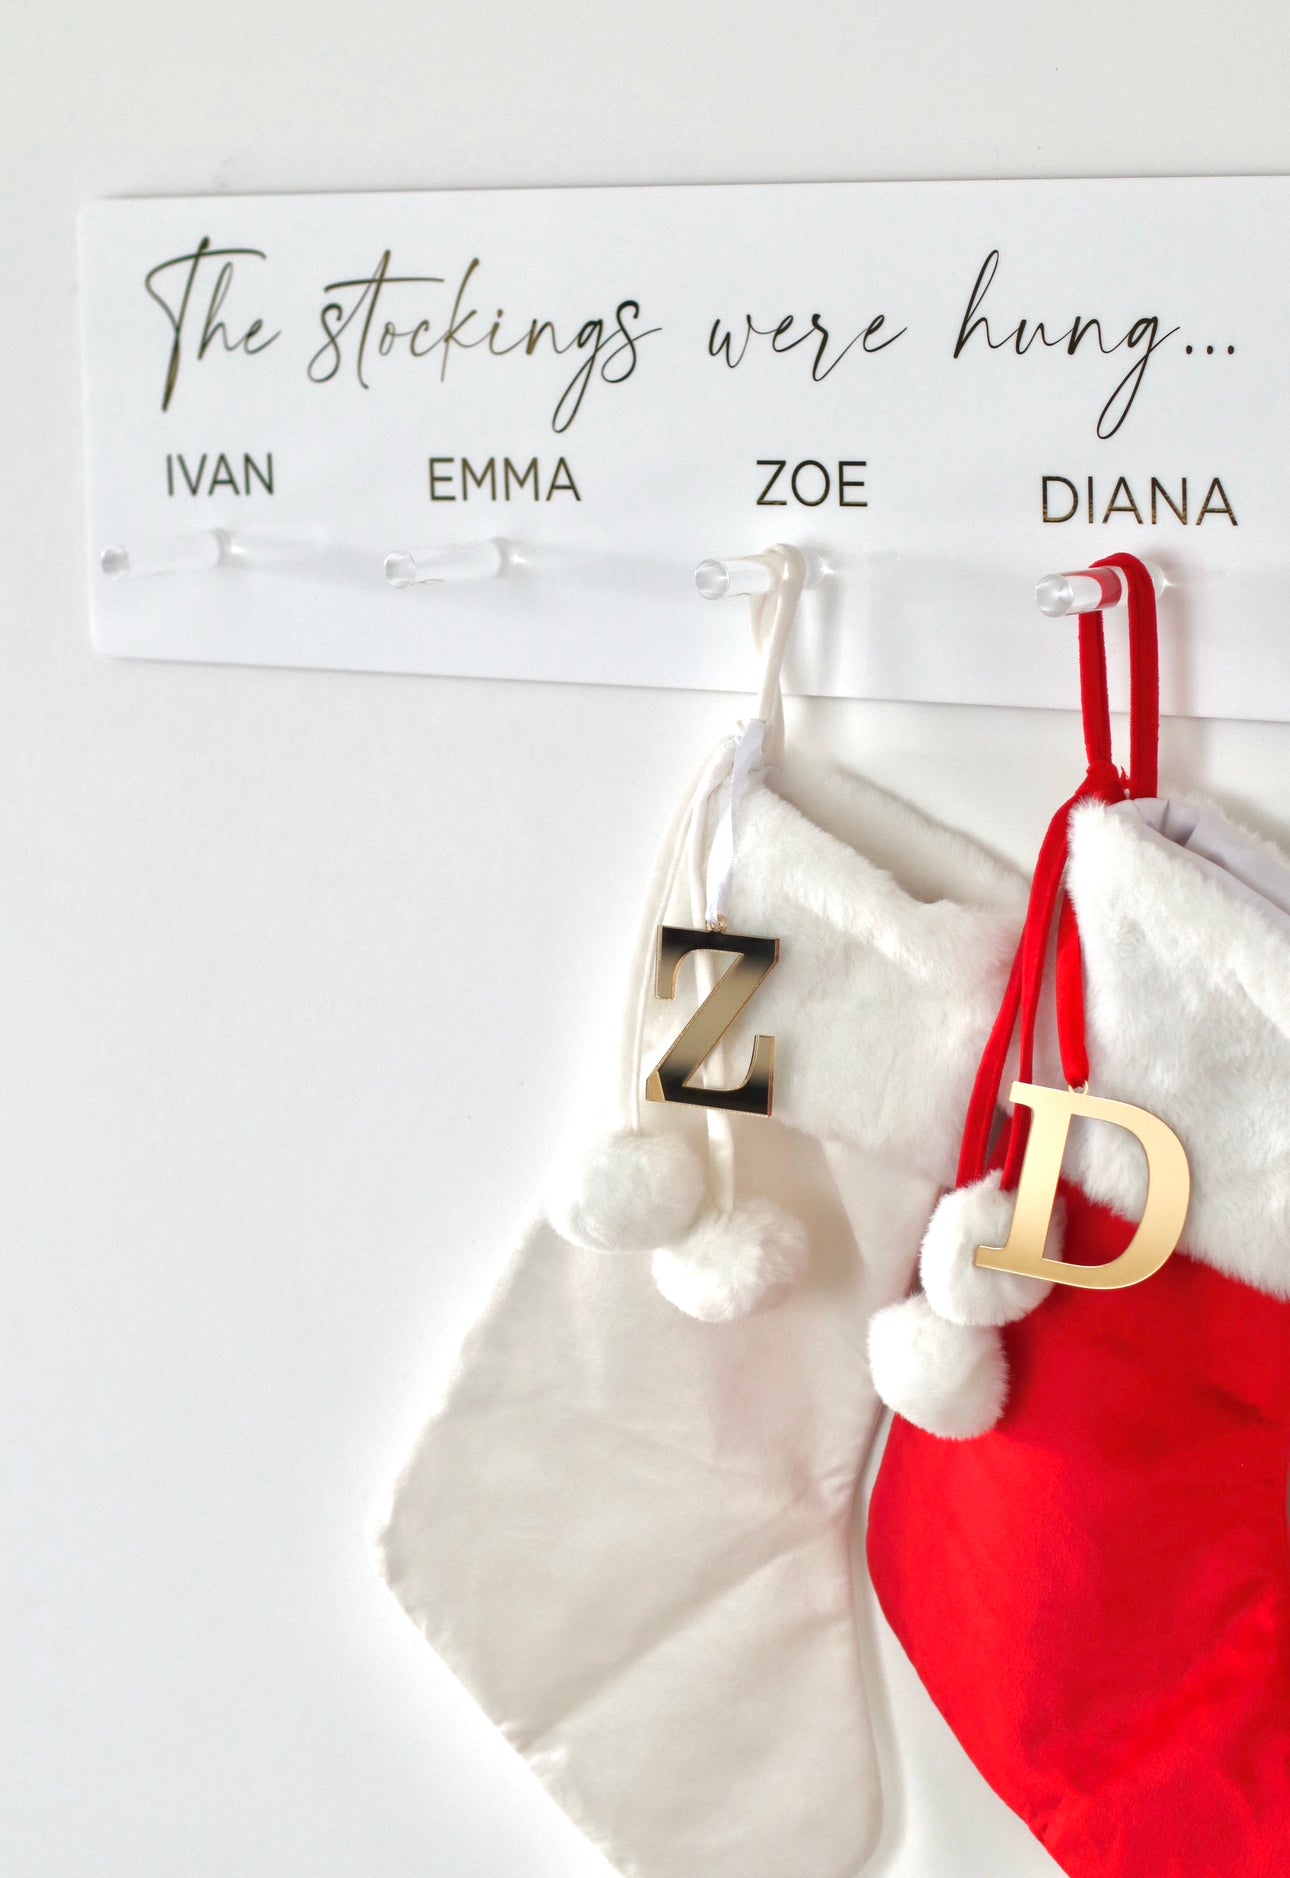 Velvet Personalised Christmas Stockings - Velvet stocking with plush white trim